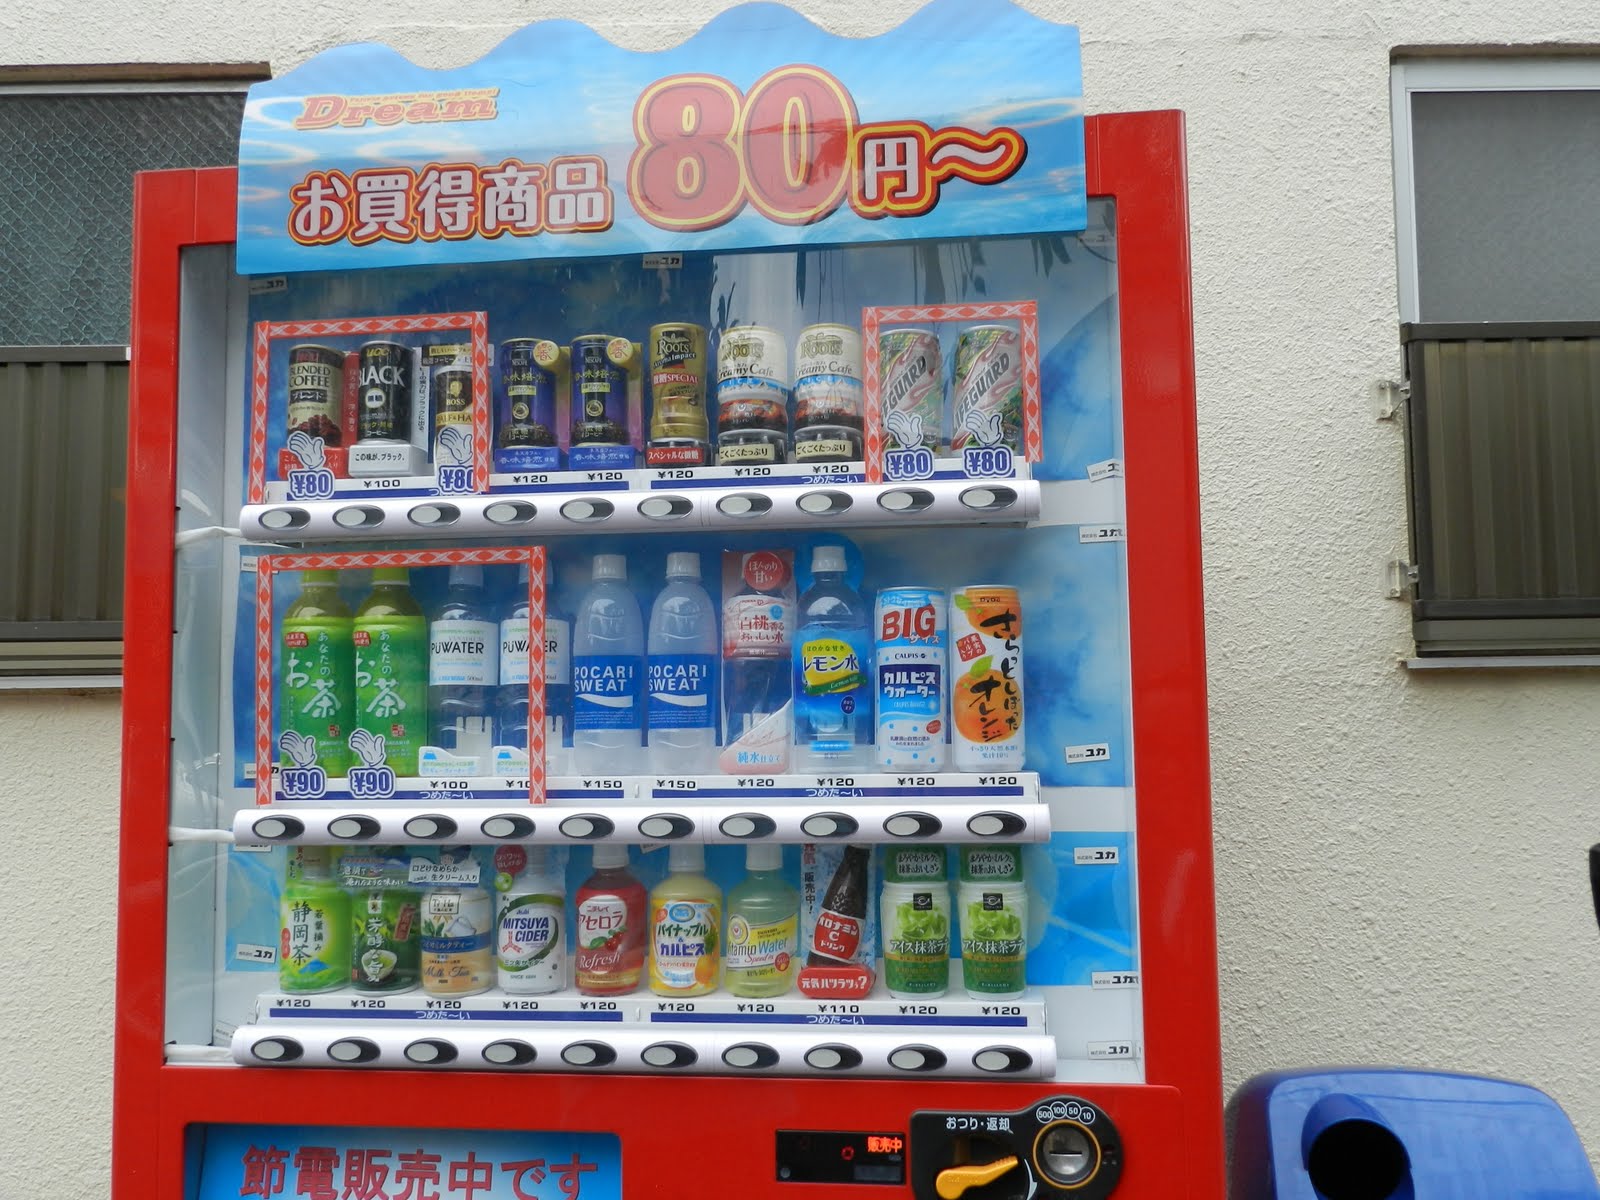 Chanchan in Japanpan: vending machines1600 x 1200